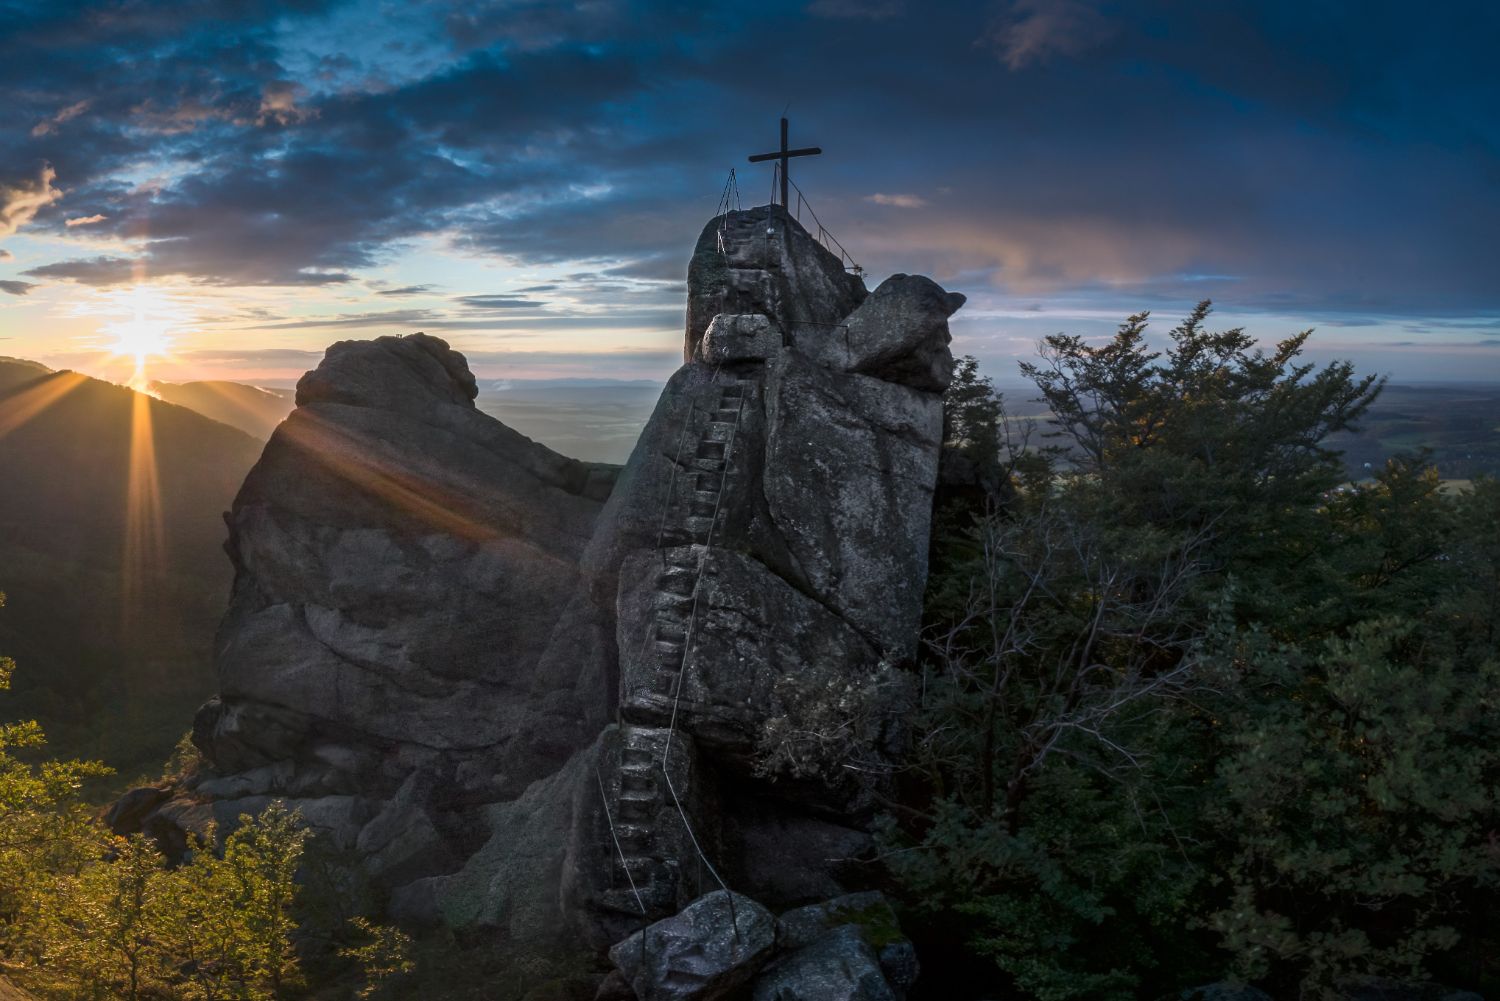 Západ slunce na vyhlídce Ořešník – skalní dominanta nad Hejnicemi, Jizerské hory. Pohled na skálu se strmými schody a křížem